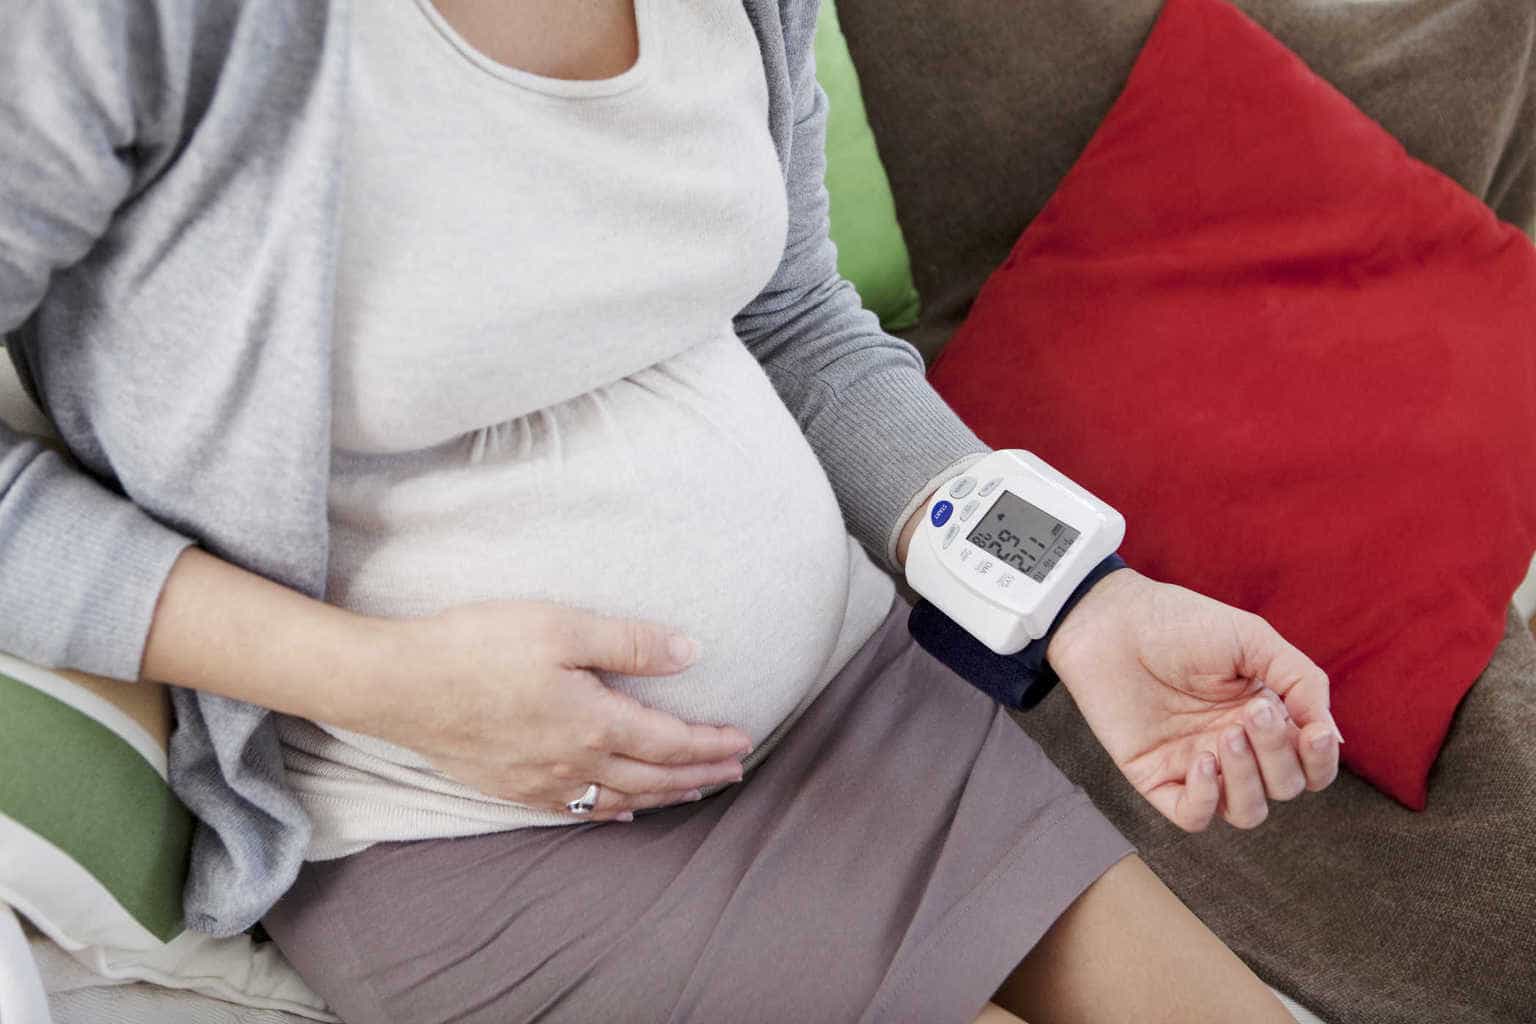 Chuẩn bị trước khi mang thai với một chiếc máy đo huyết áp để theo dõi trong suốt giai đoạn tiền thai sản